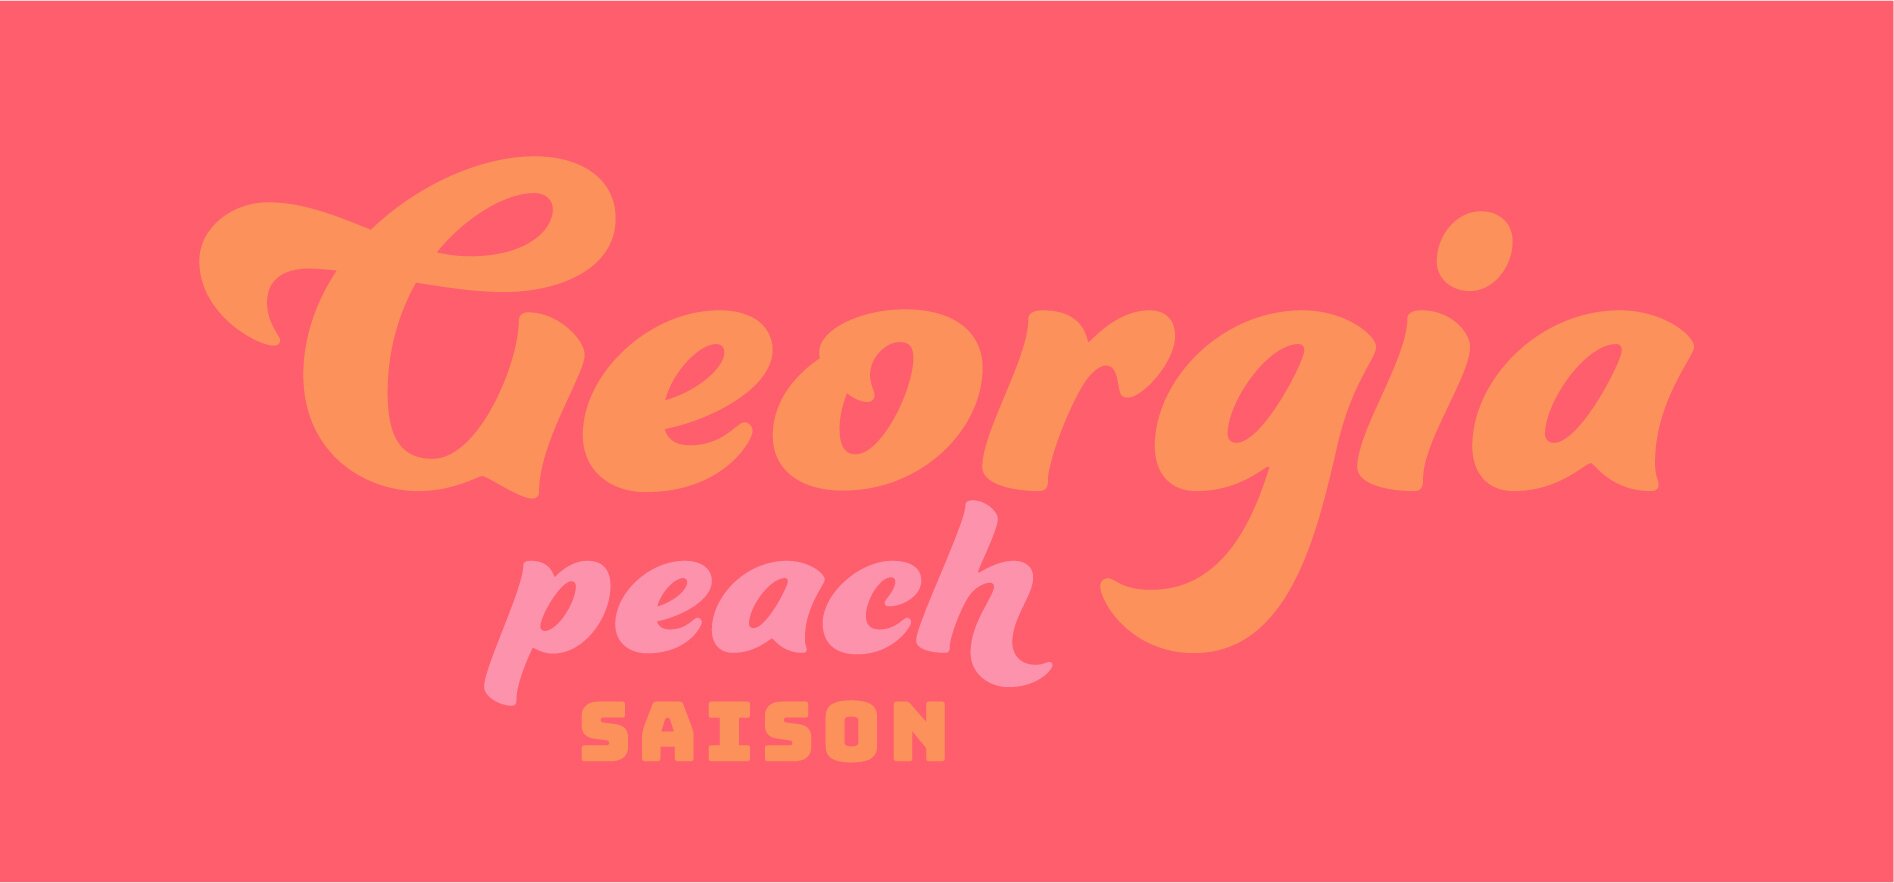 Georgia Peach.jpg